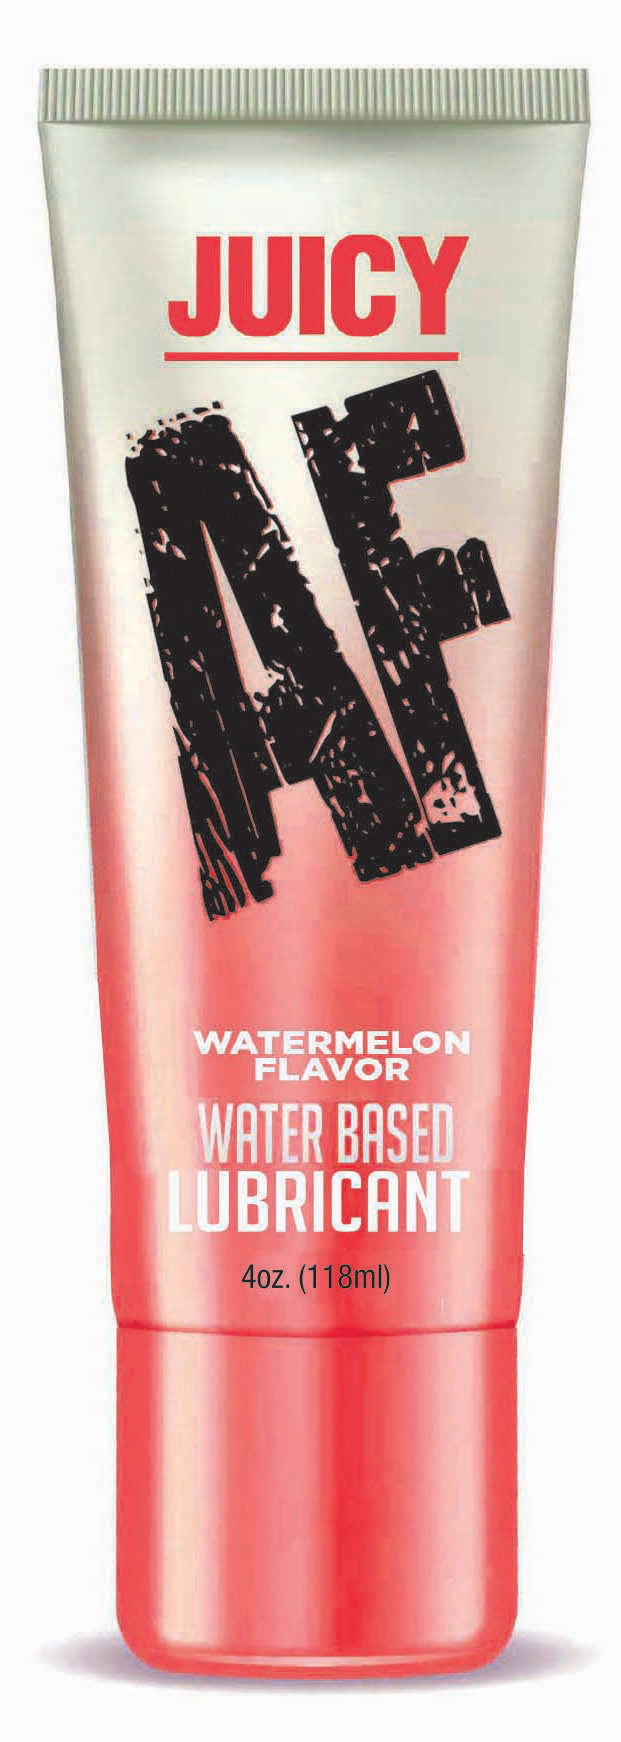 Juicy Af - Watermelon Water Based Flavored Lubricant - 4 Oz